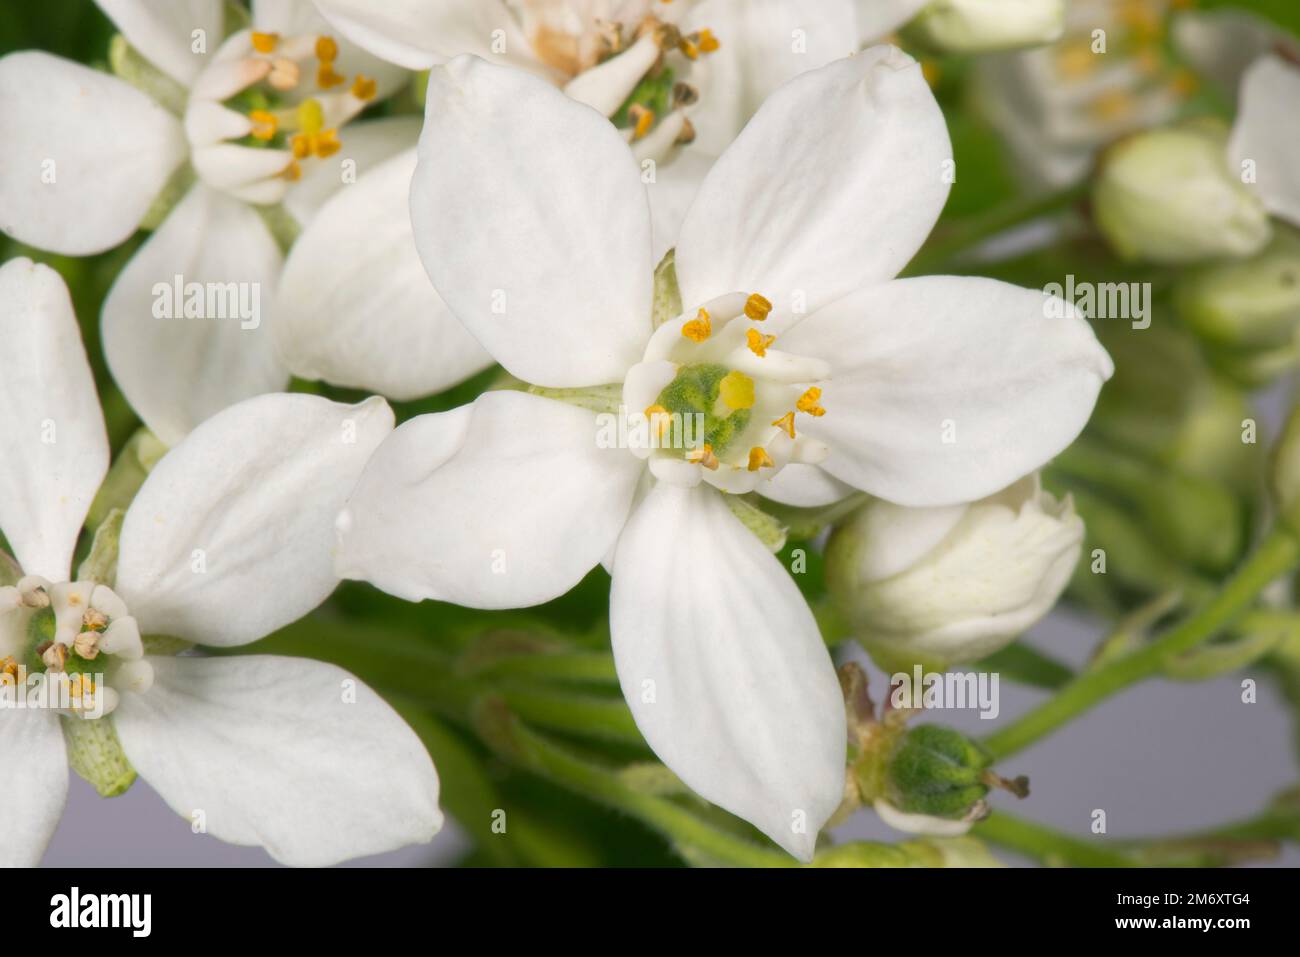 Fleur d'oranger mexicaine (Choisya ternata) fleur blanche en forme d'étoile parfumée, anthères, étamines, ovaire, stigmate et style Banque D'Images